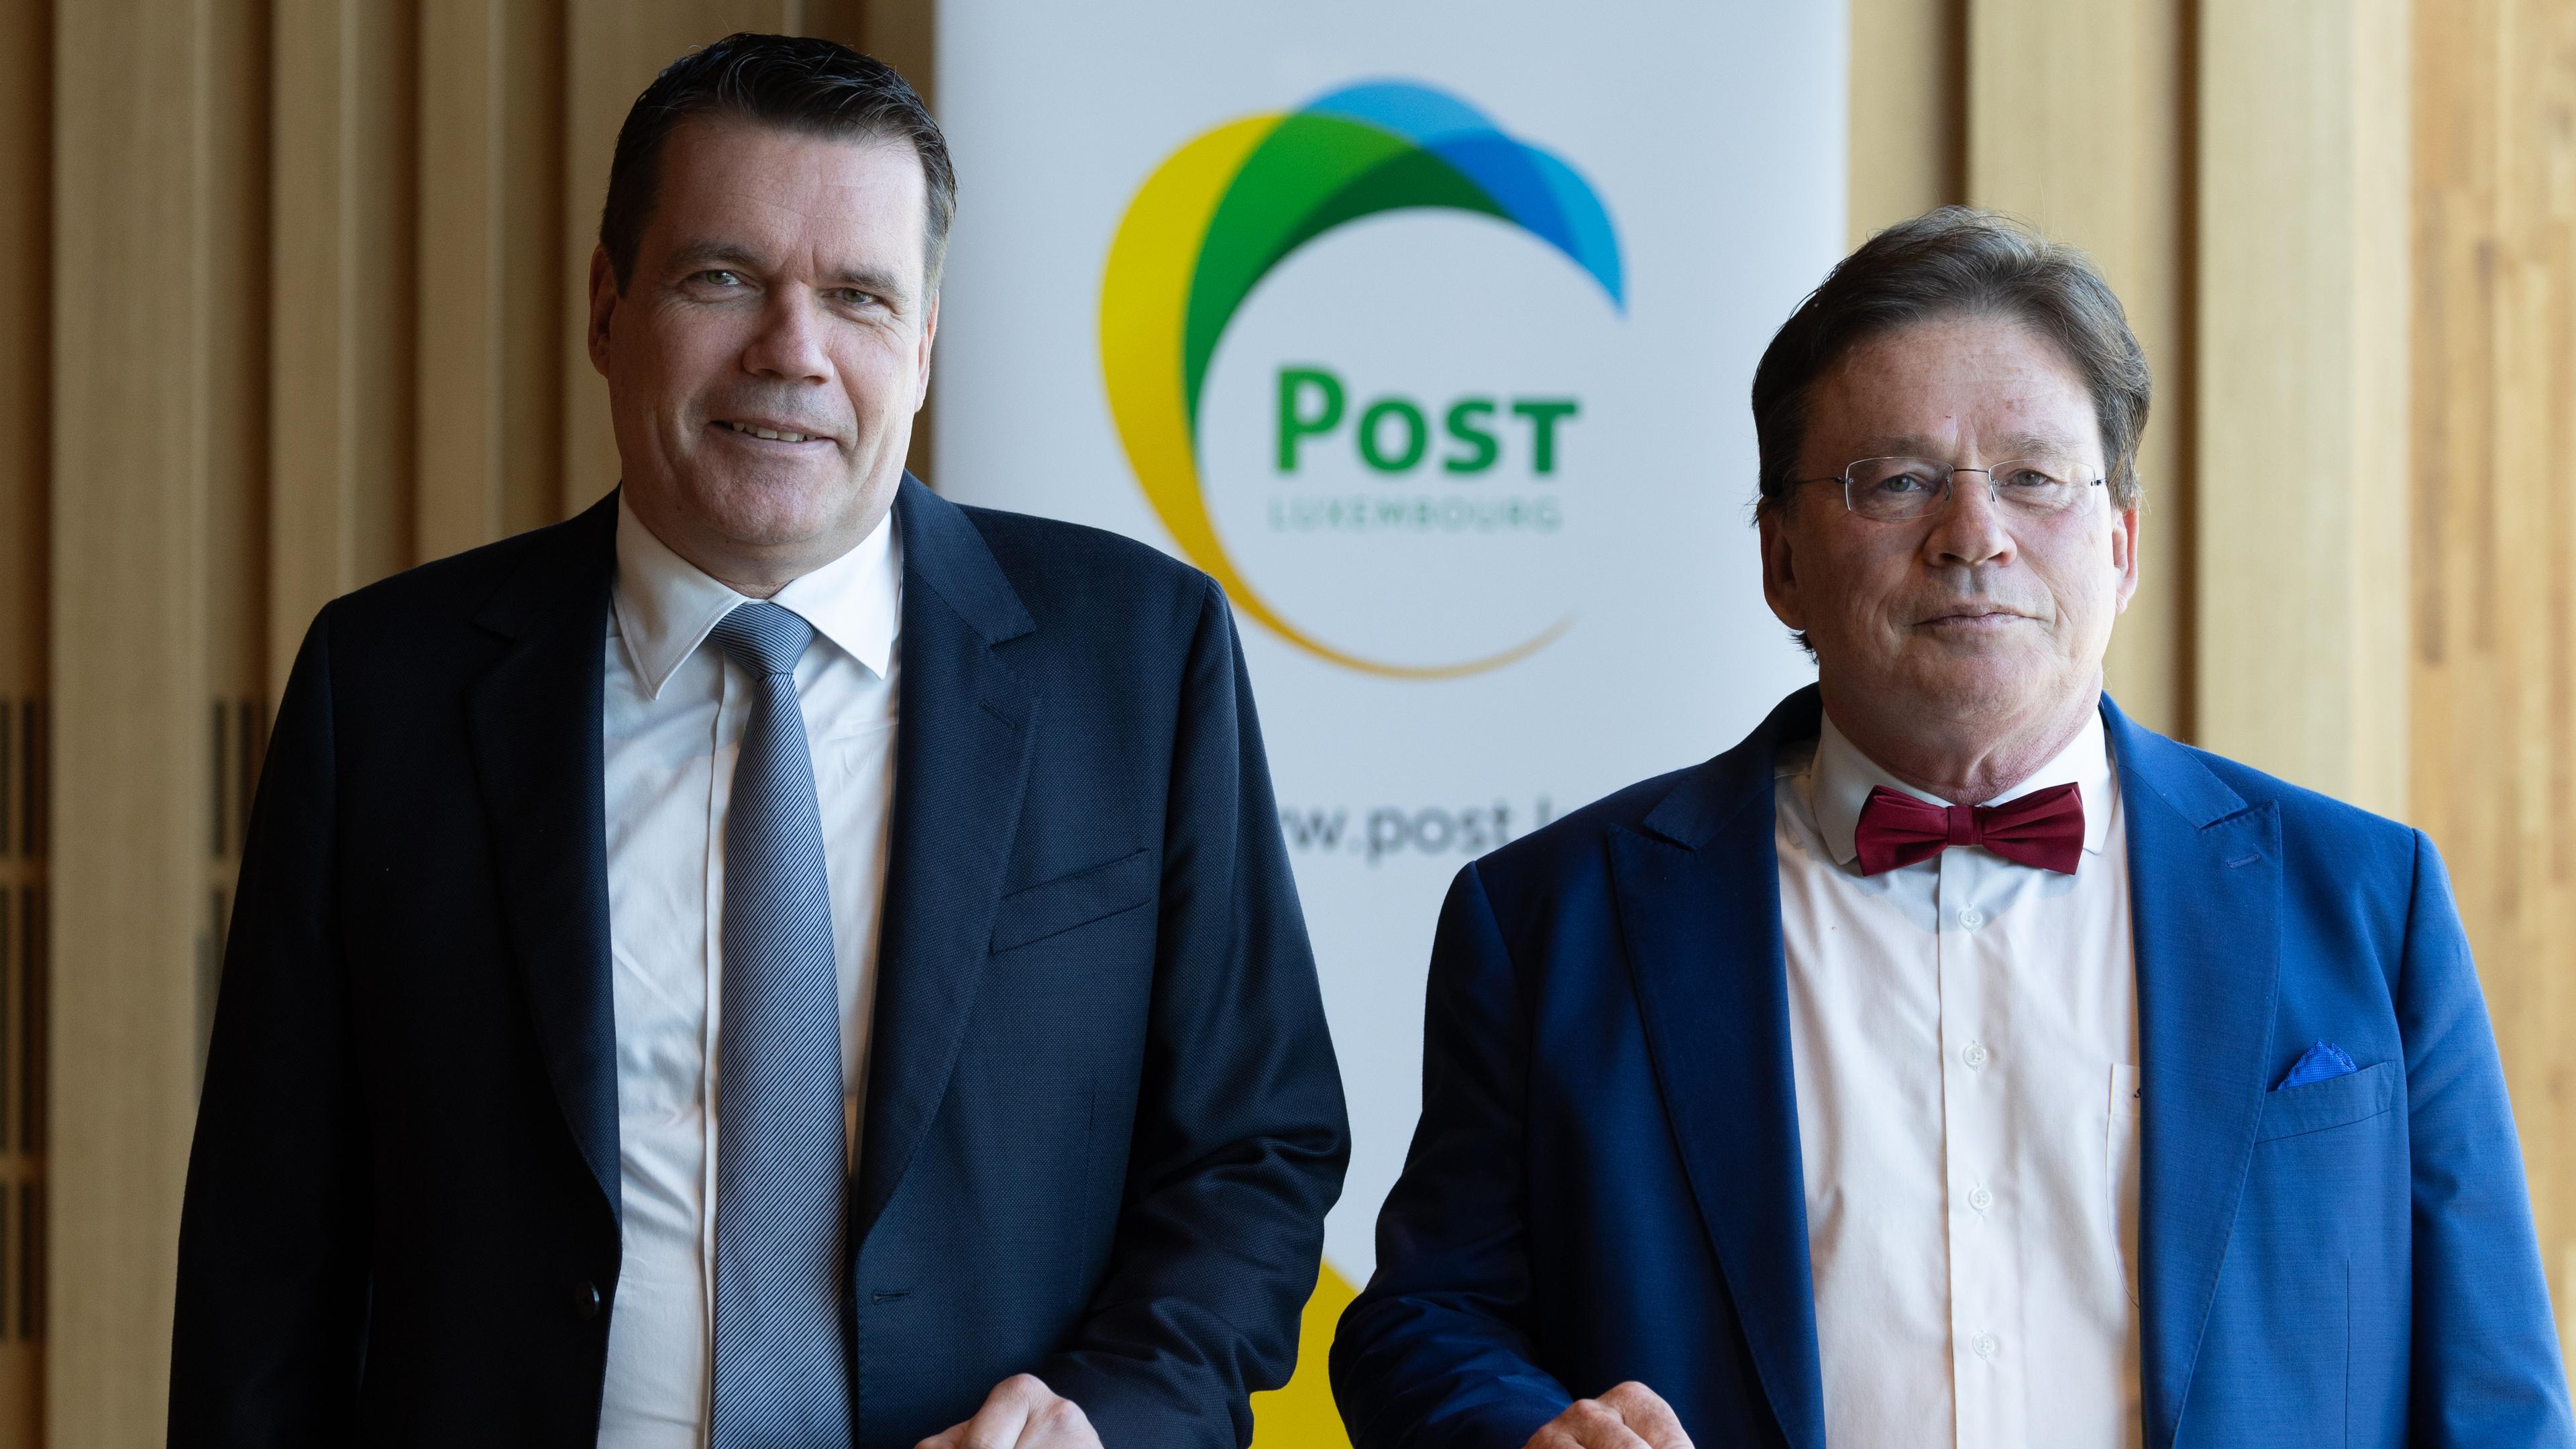 De gauche à droite: Claude Strasser, Directeur général de Post Luxembourg et Serge Allegrezza, Président du Conseil d’administration de Post Luxembourg.